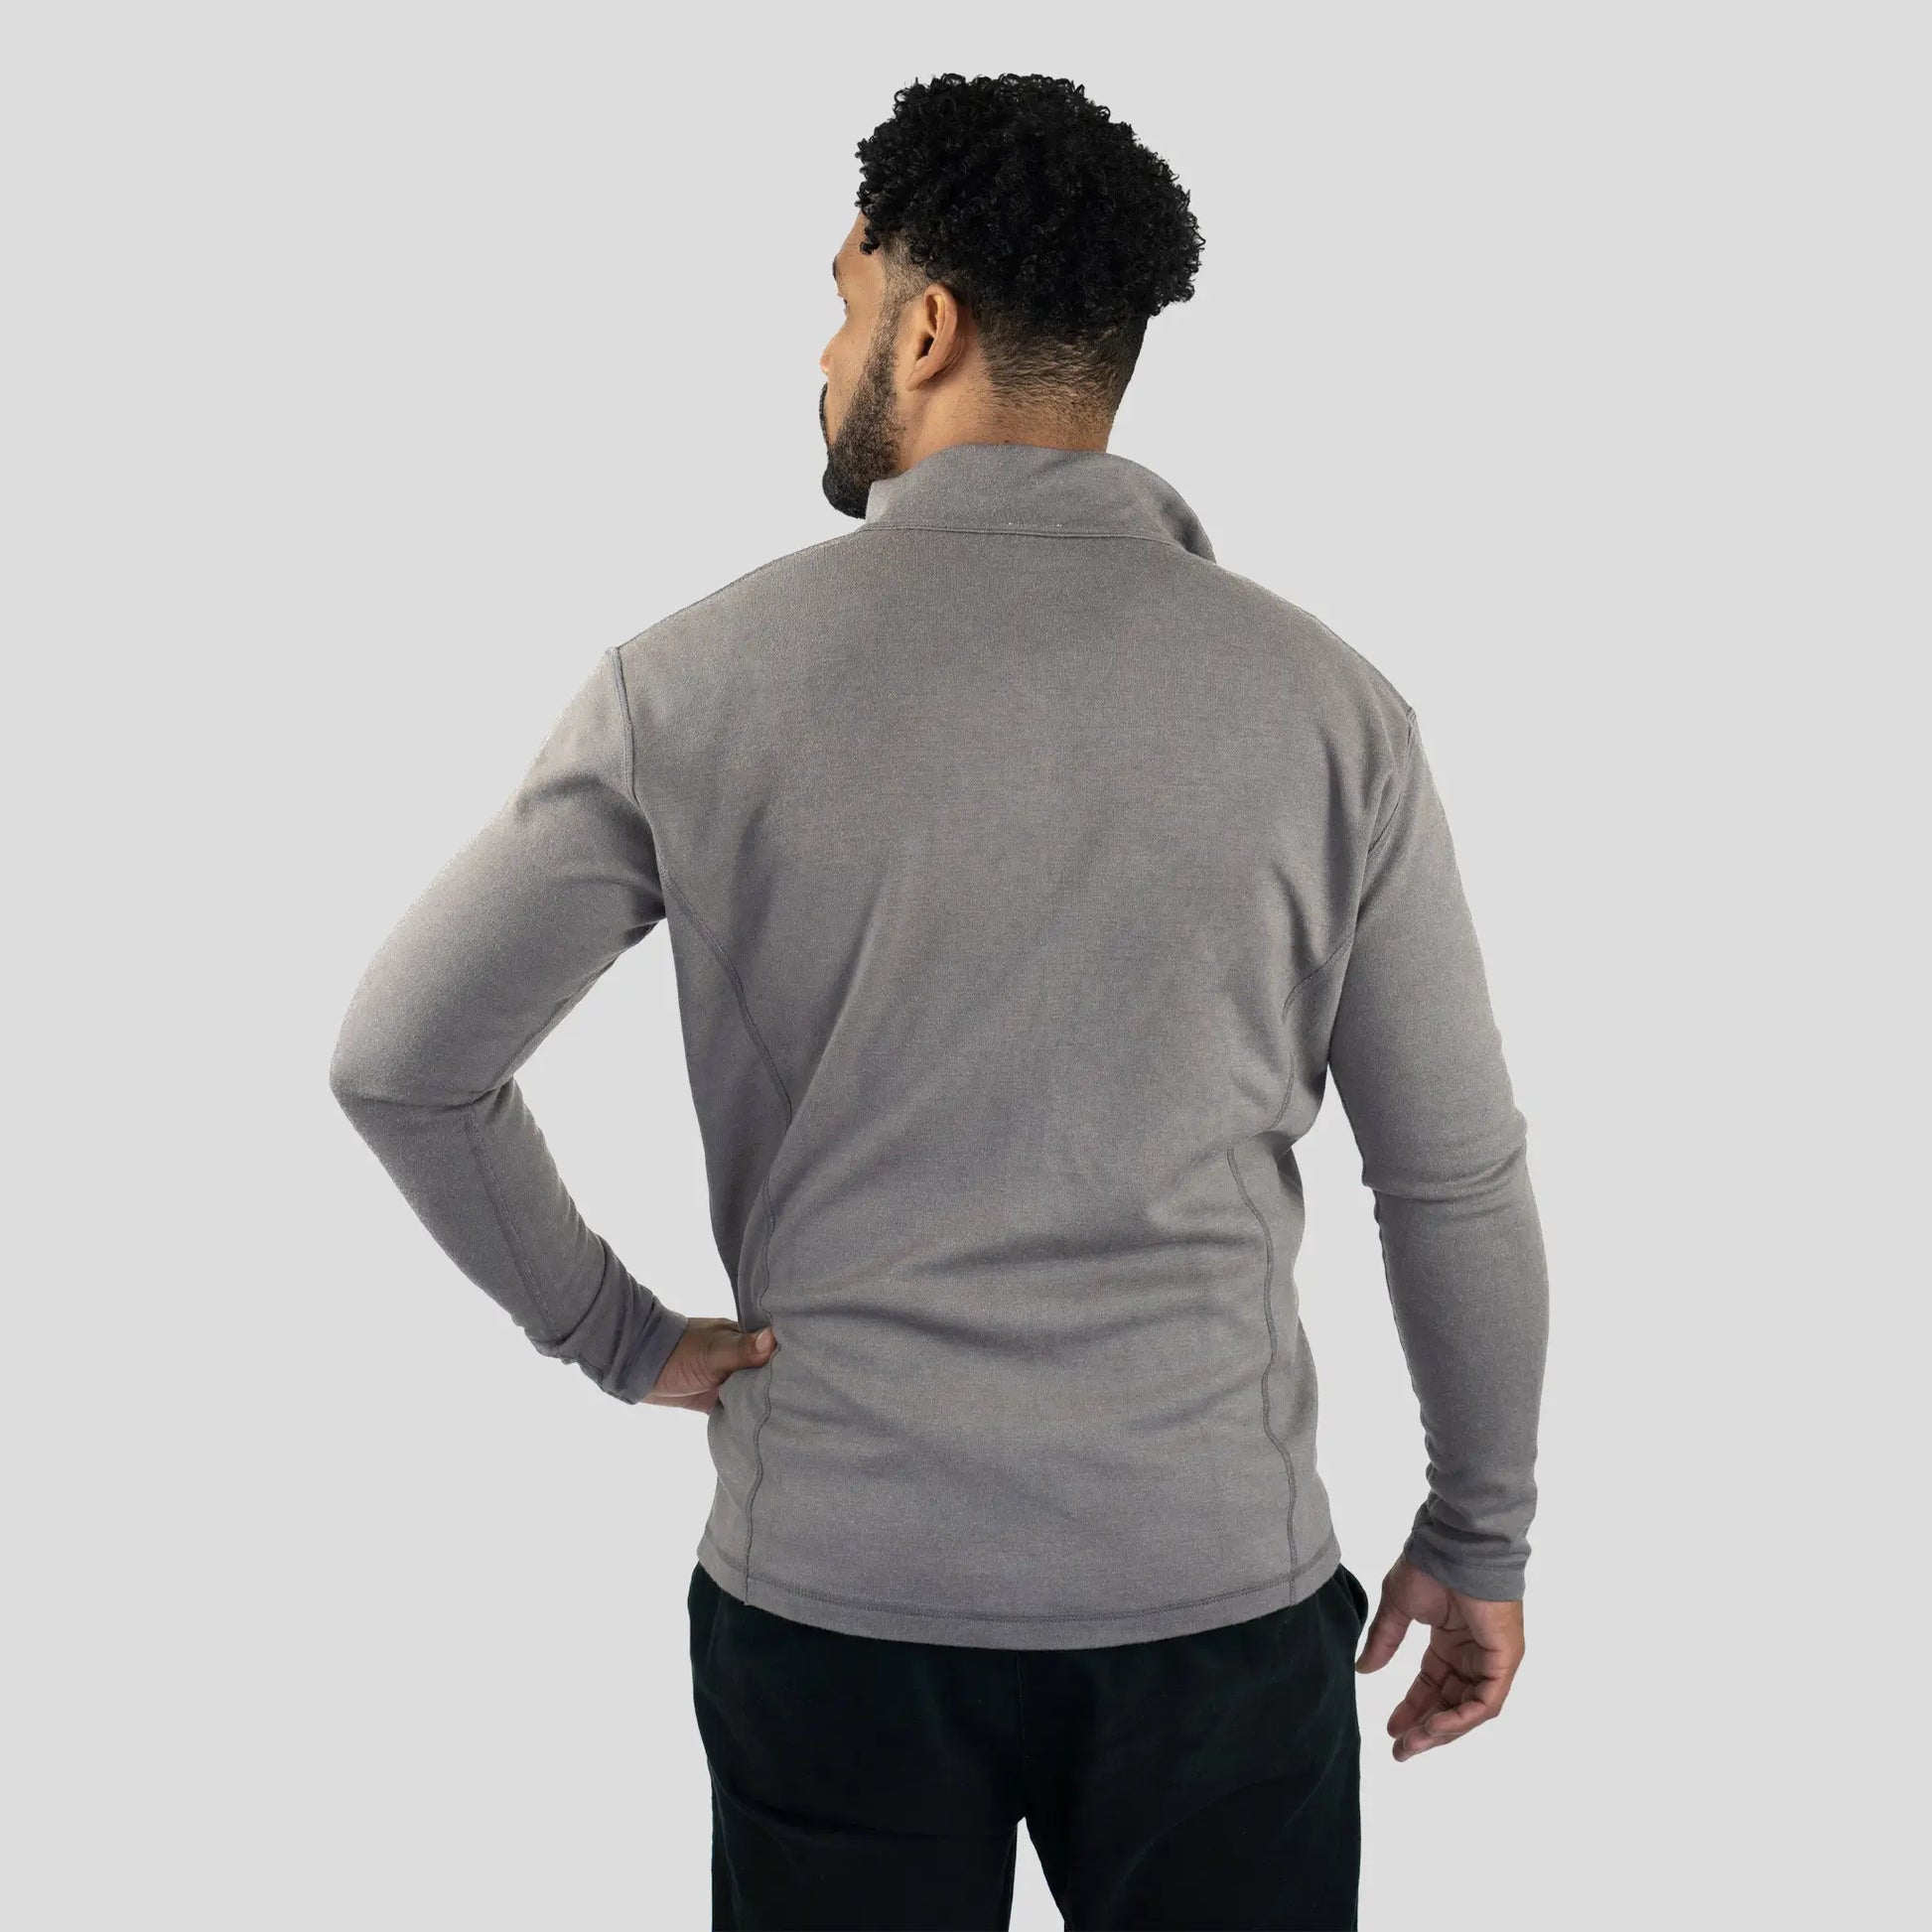 mens jacket color natural gray